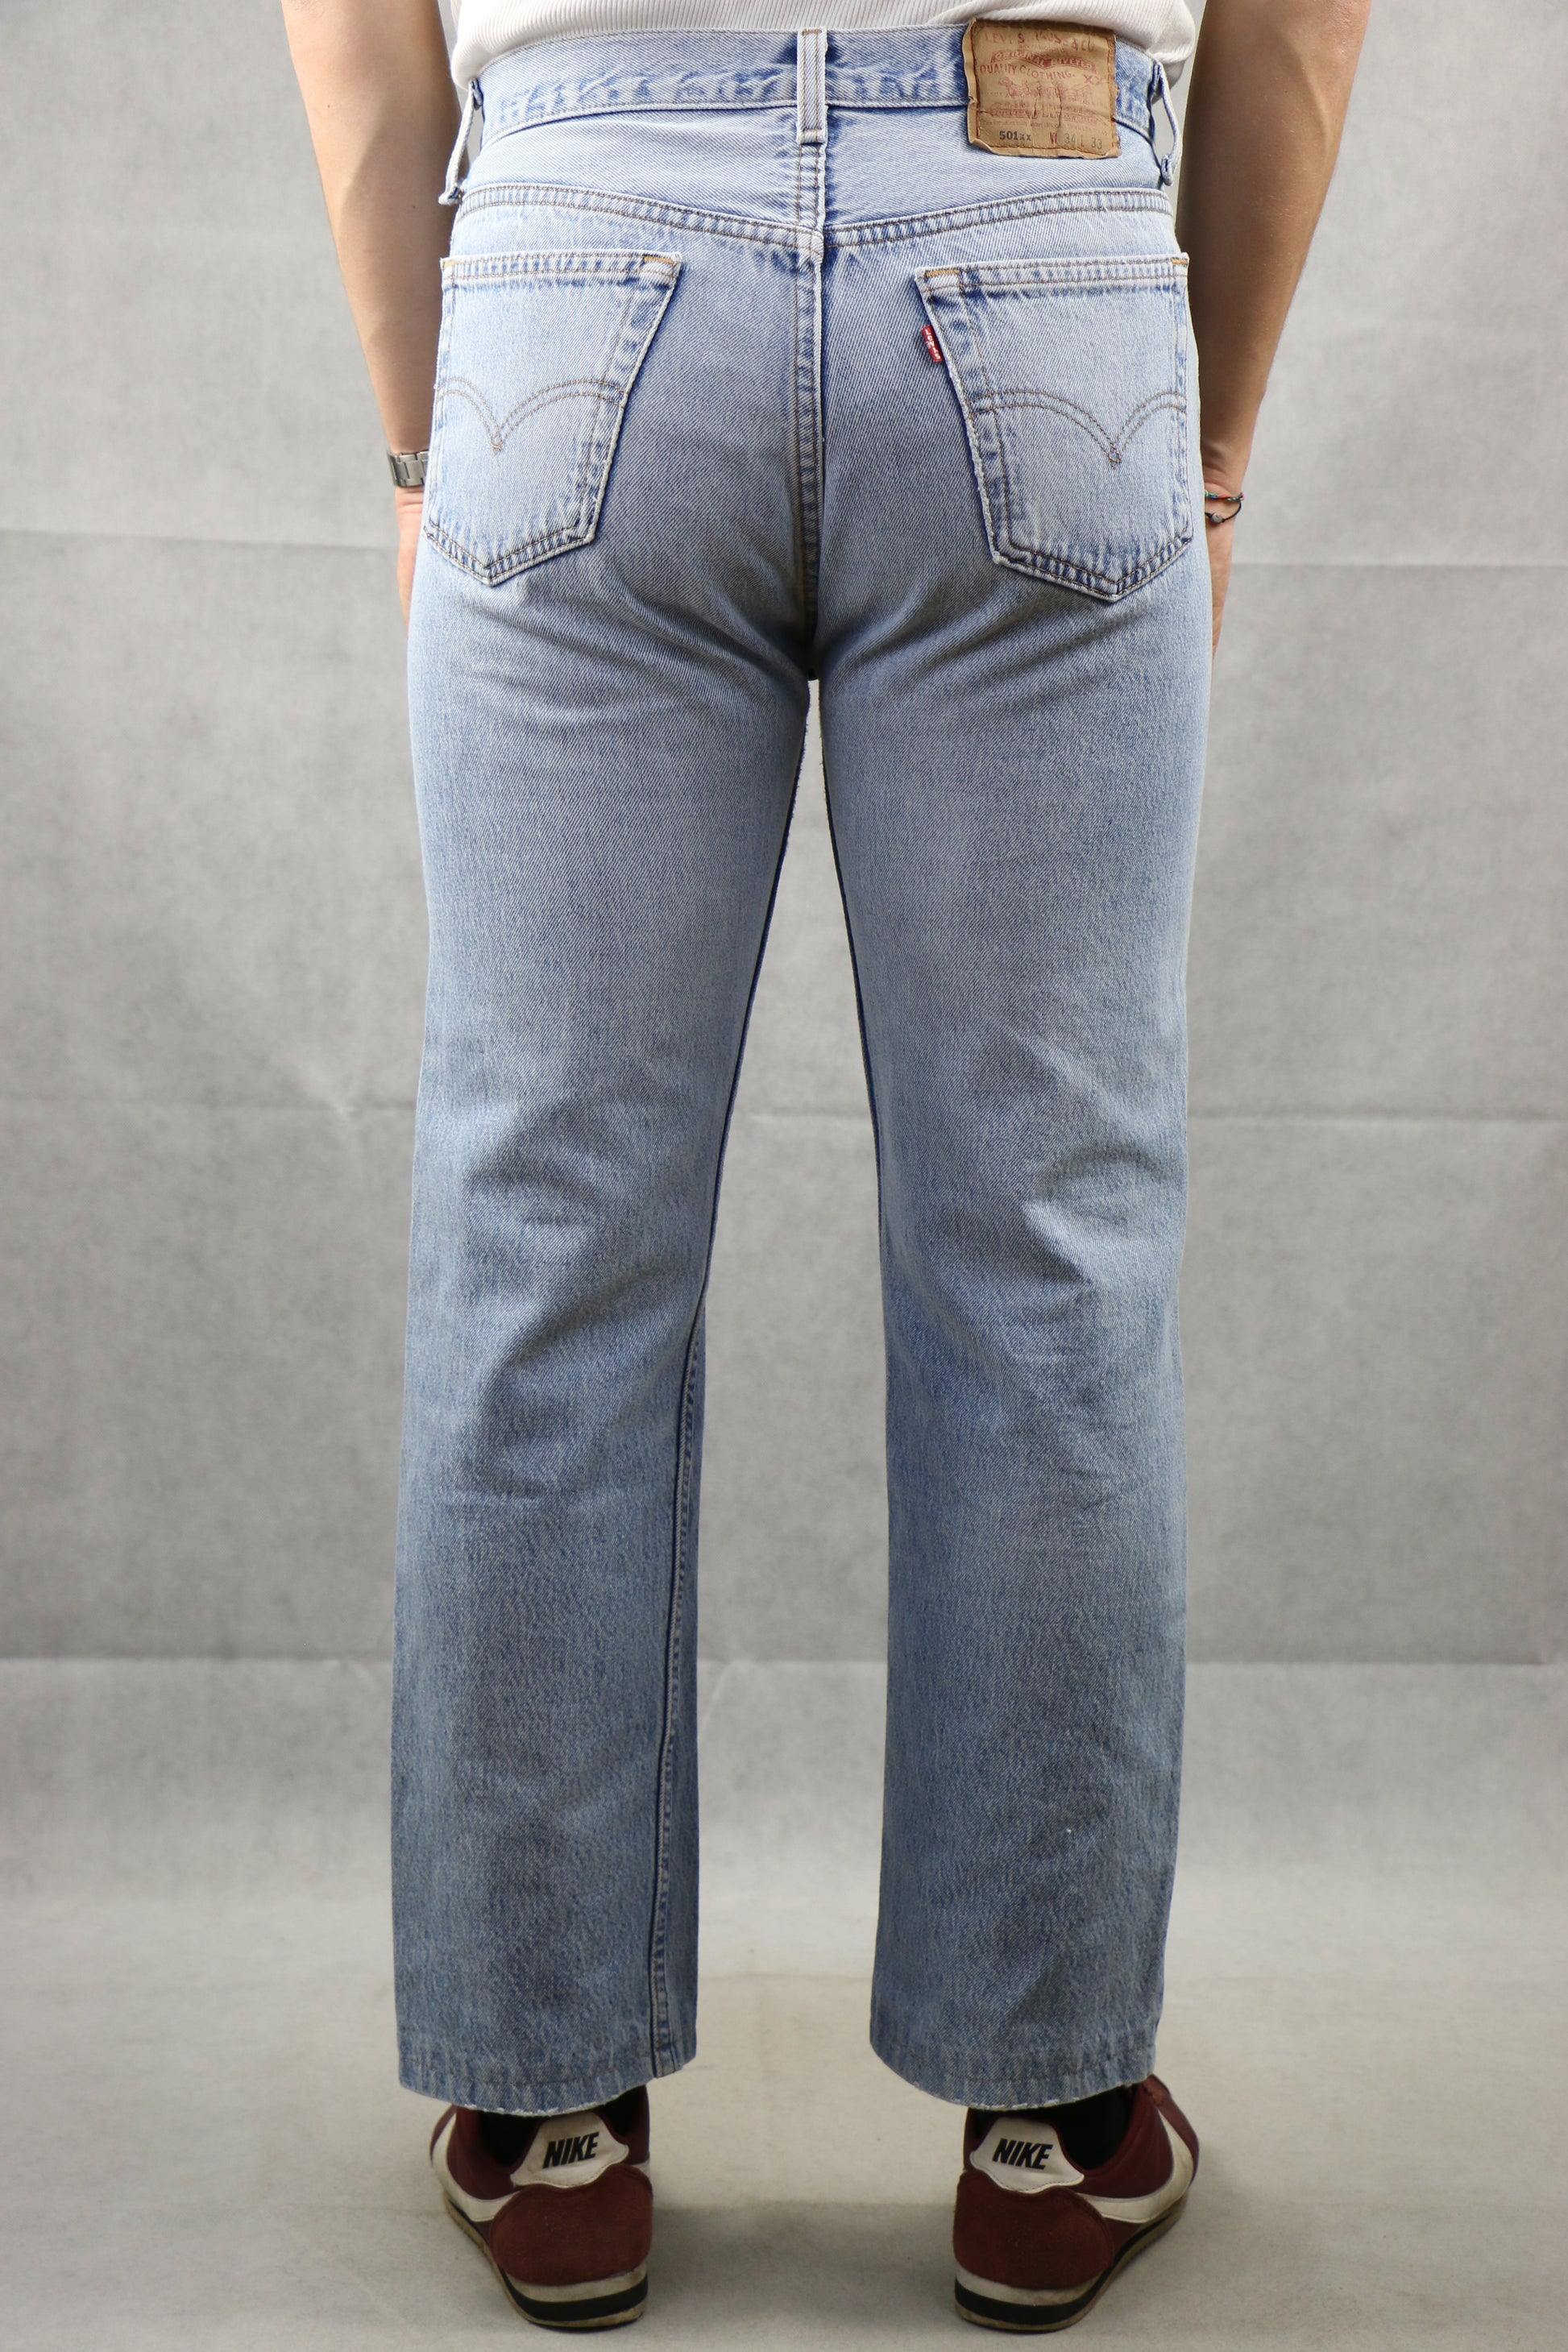 Levi's 501 Jeans Made in U.S.A. W34 L33, clochard92.com